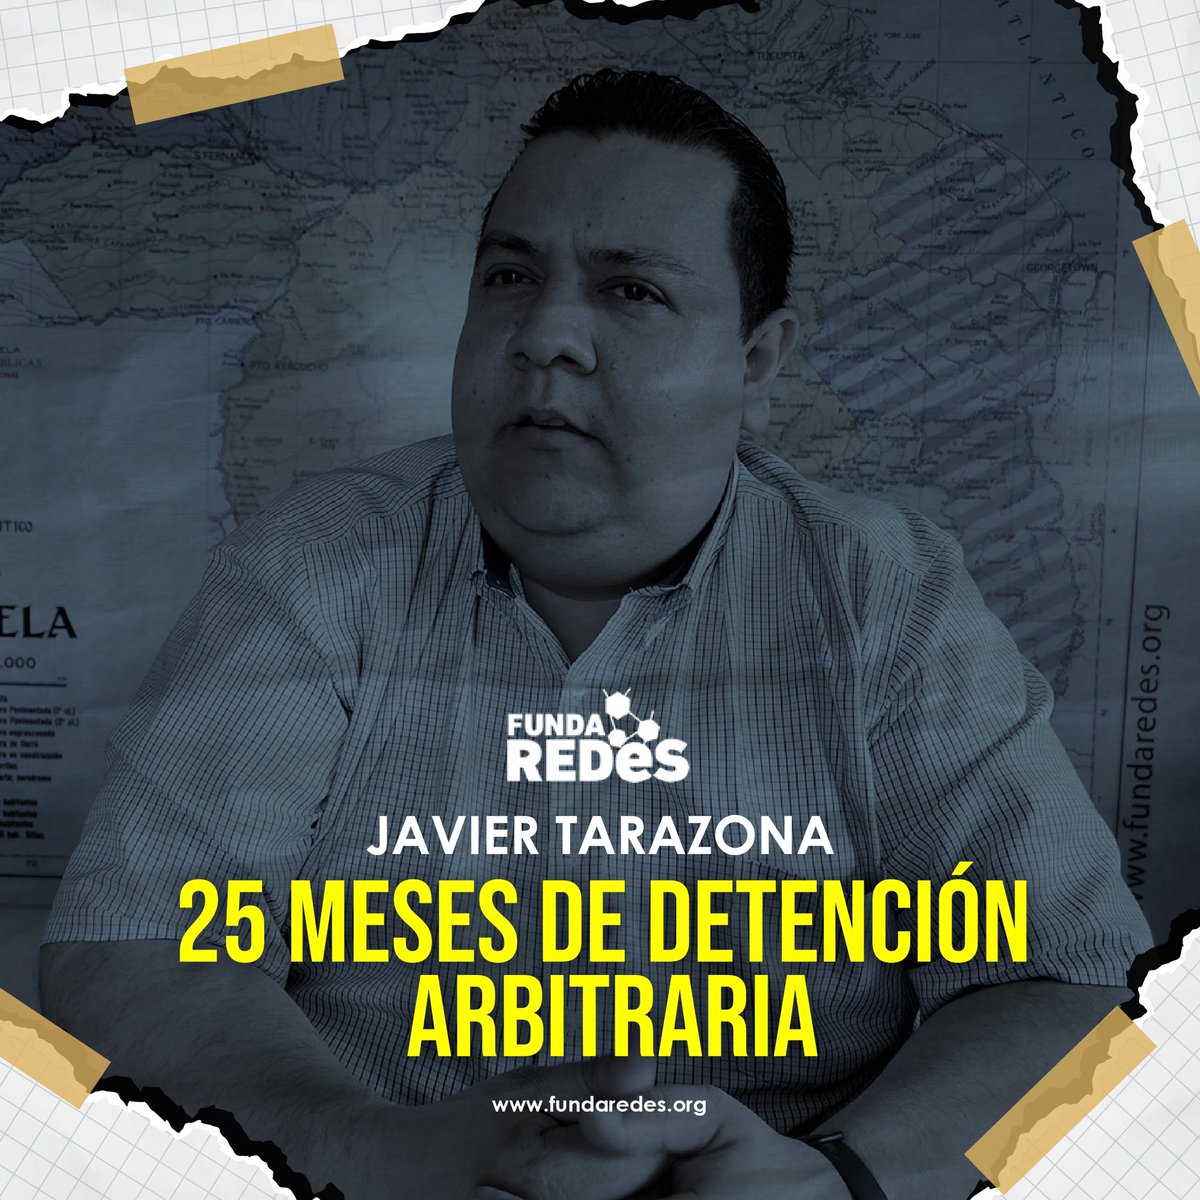 #AlertaFundaRedes | Queremos recordar que el día de hoy, se cumplen 25 meses de la detención arbitraria y privación ilegítima de libertad de nuestro director general Javier Tarazona, seguimos exigiendo su libertad plena e inmediata. #LiberenAJavierTarazona…